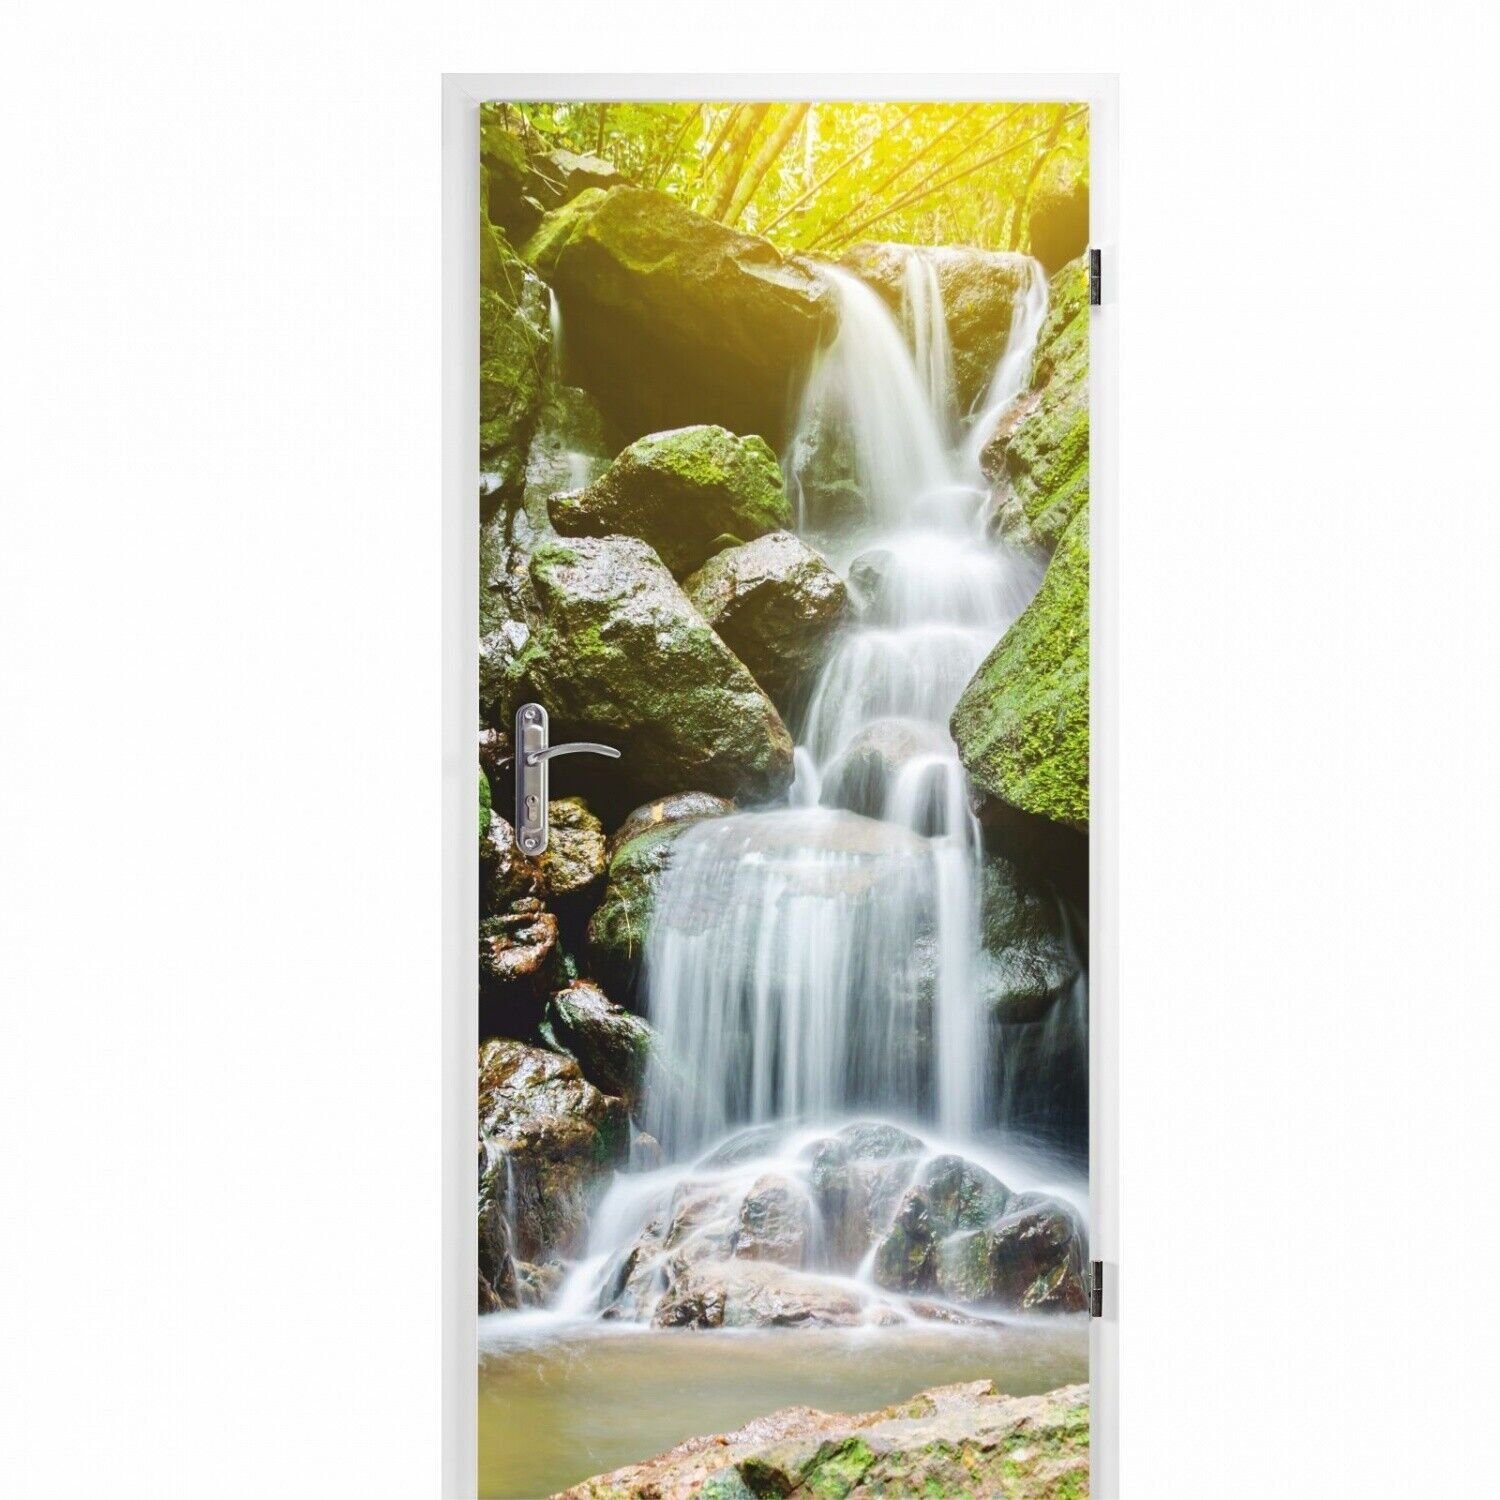 nikima Wandtattoo TB-06 selbstklebendes Türbild – Wasserfall (PVC-Folie), 0,9 x 2 m selbstklebende Folie